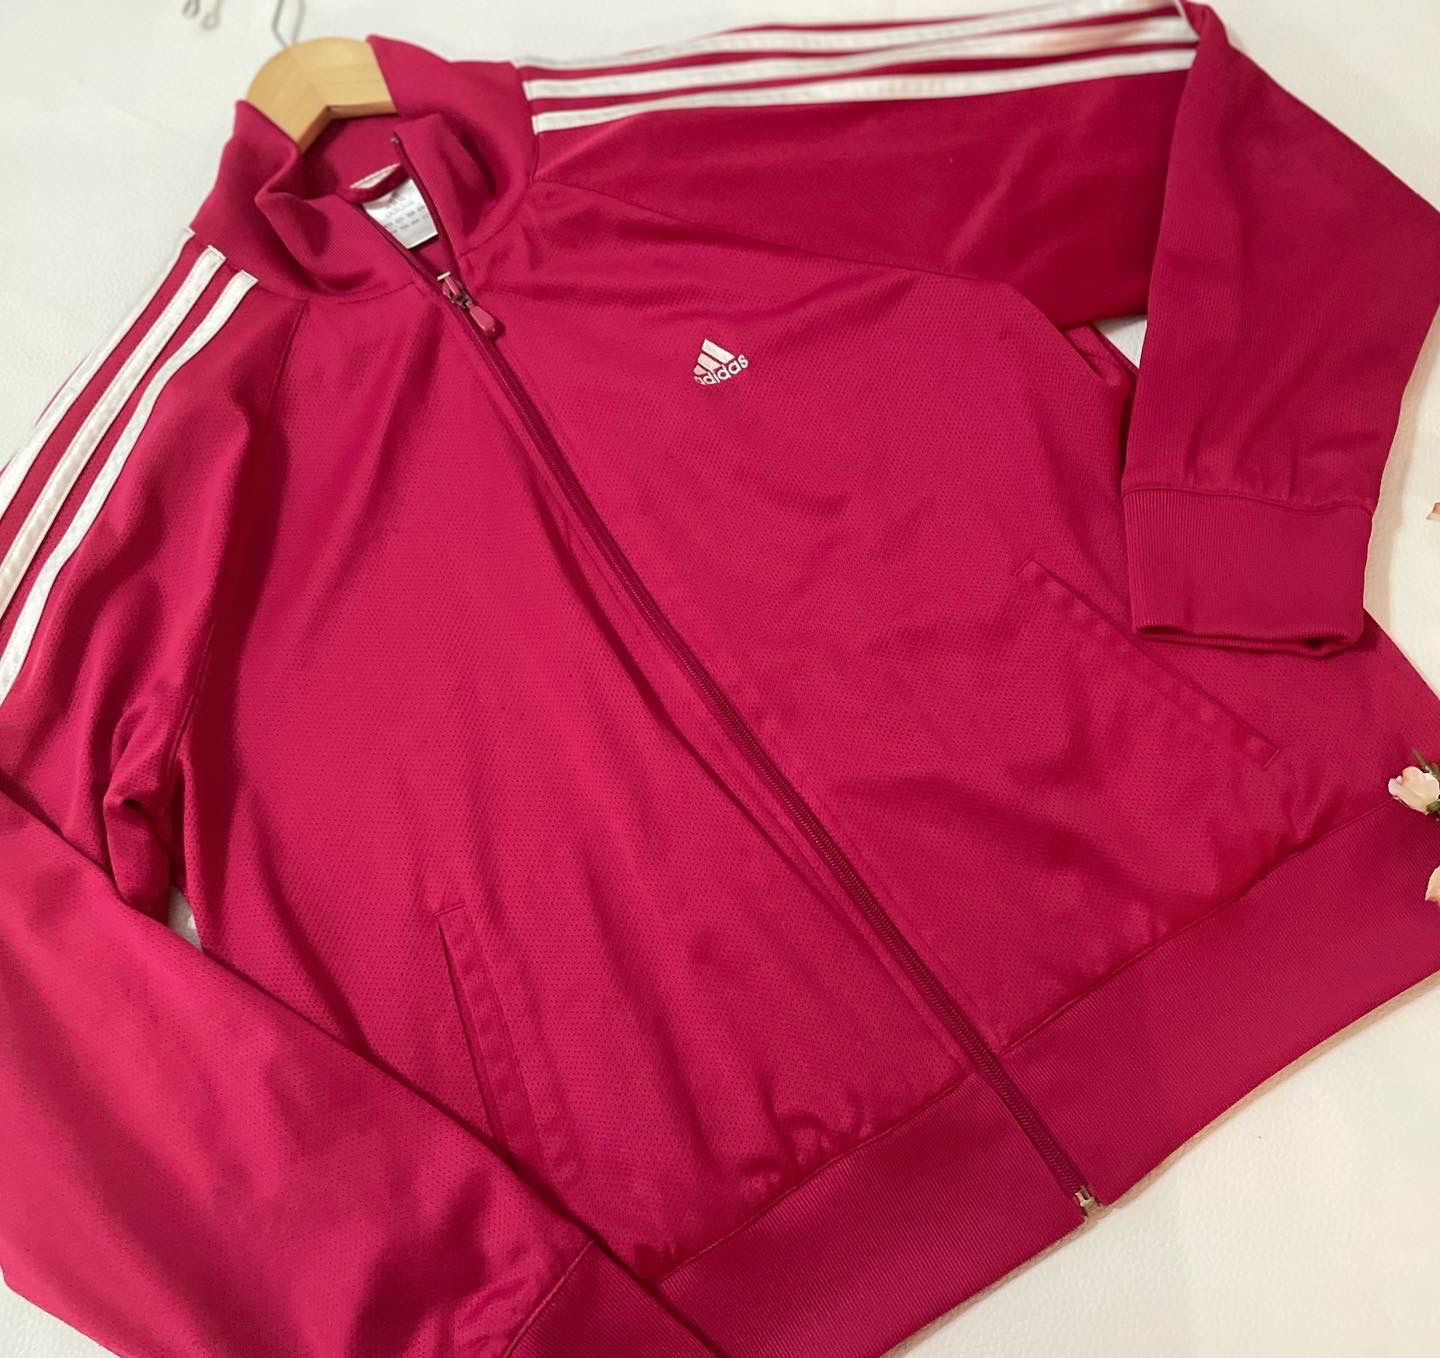 Adidas | Womens Full Zipper Tricoat Track Jacket (XL) #115T2 